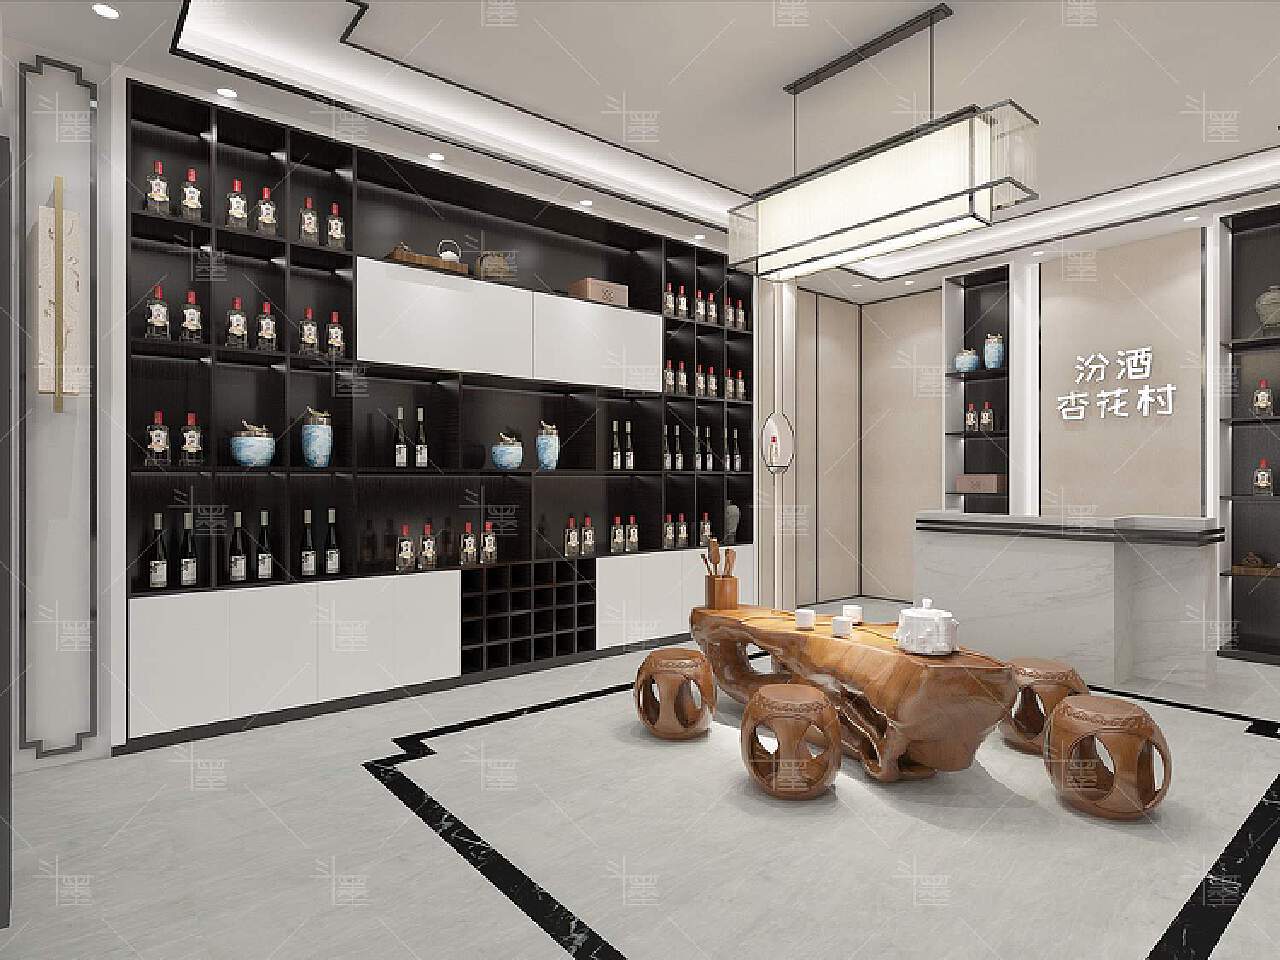 五粮液汾酒展厅——集晶廷 - 效果图交流区-建E室内设计网